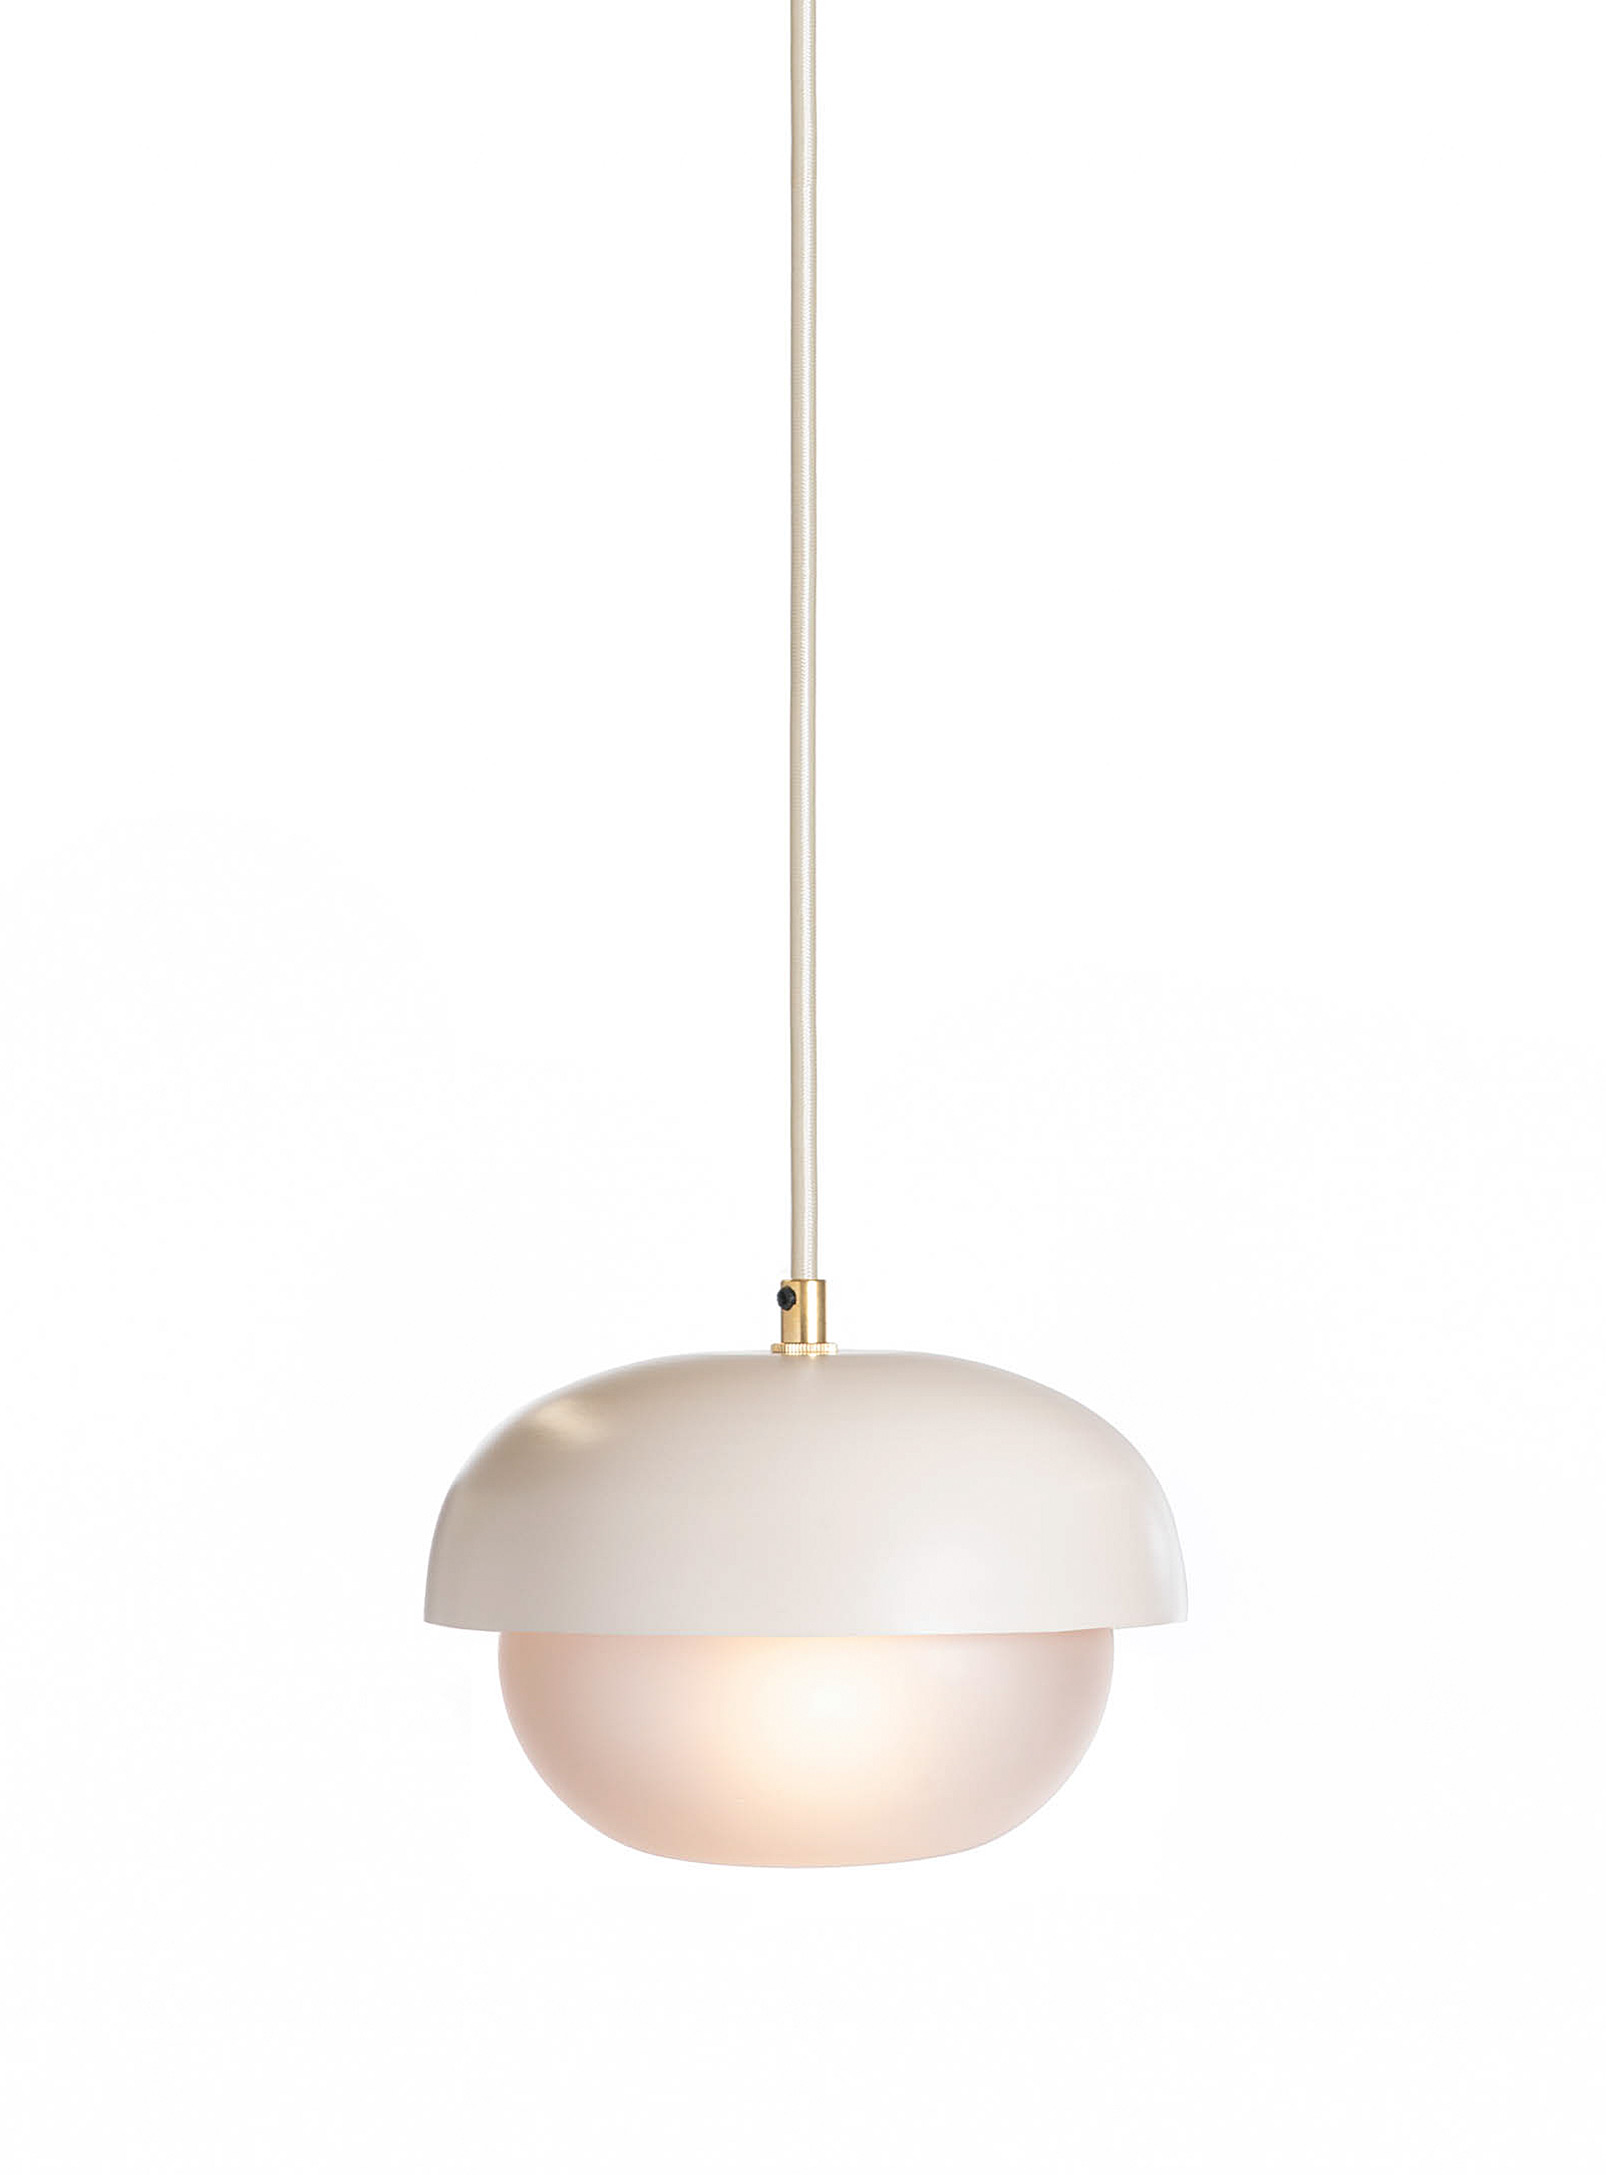 Luminaire Authentik Yoko Hanging Lamp In Cream Beige